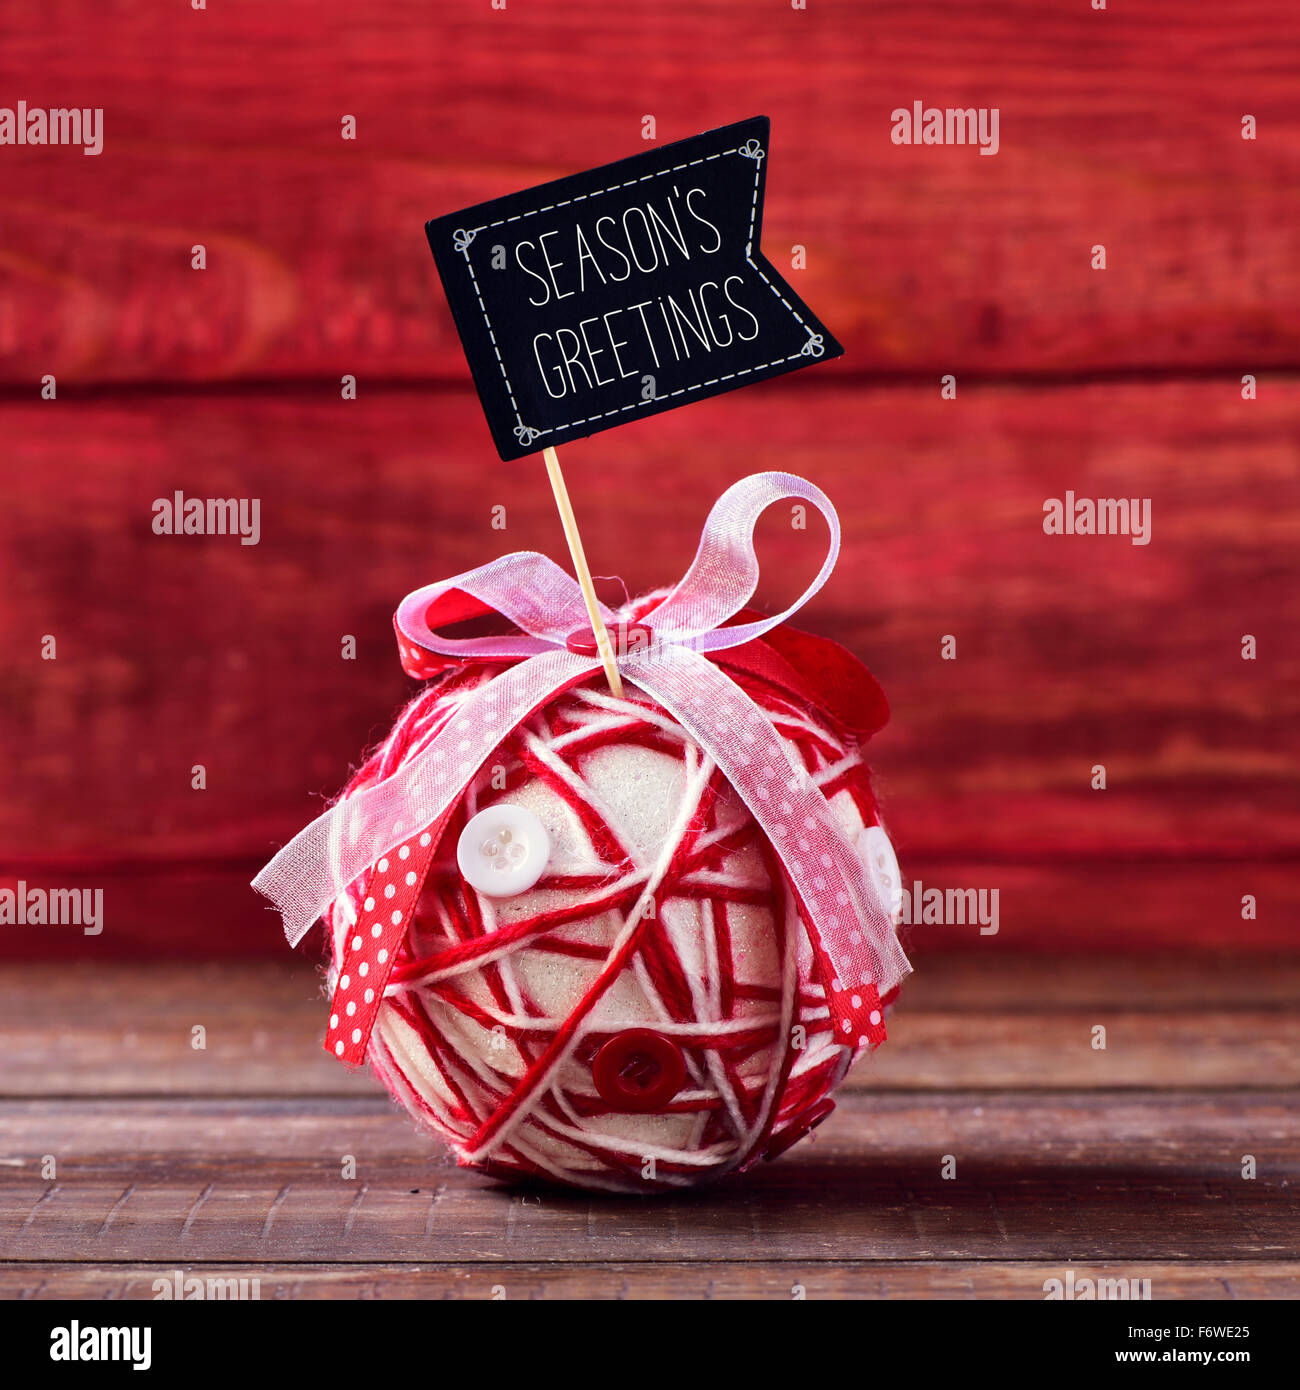 Un bal de Noël artisanal, fabriqué avec différents rubans et boutons, surmontée d'une pancarte en forme de drapeau avec les saisons texte gr Banque D'Images